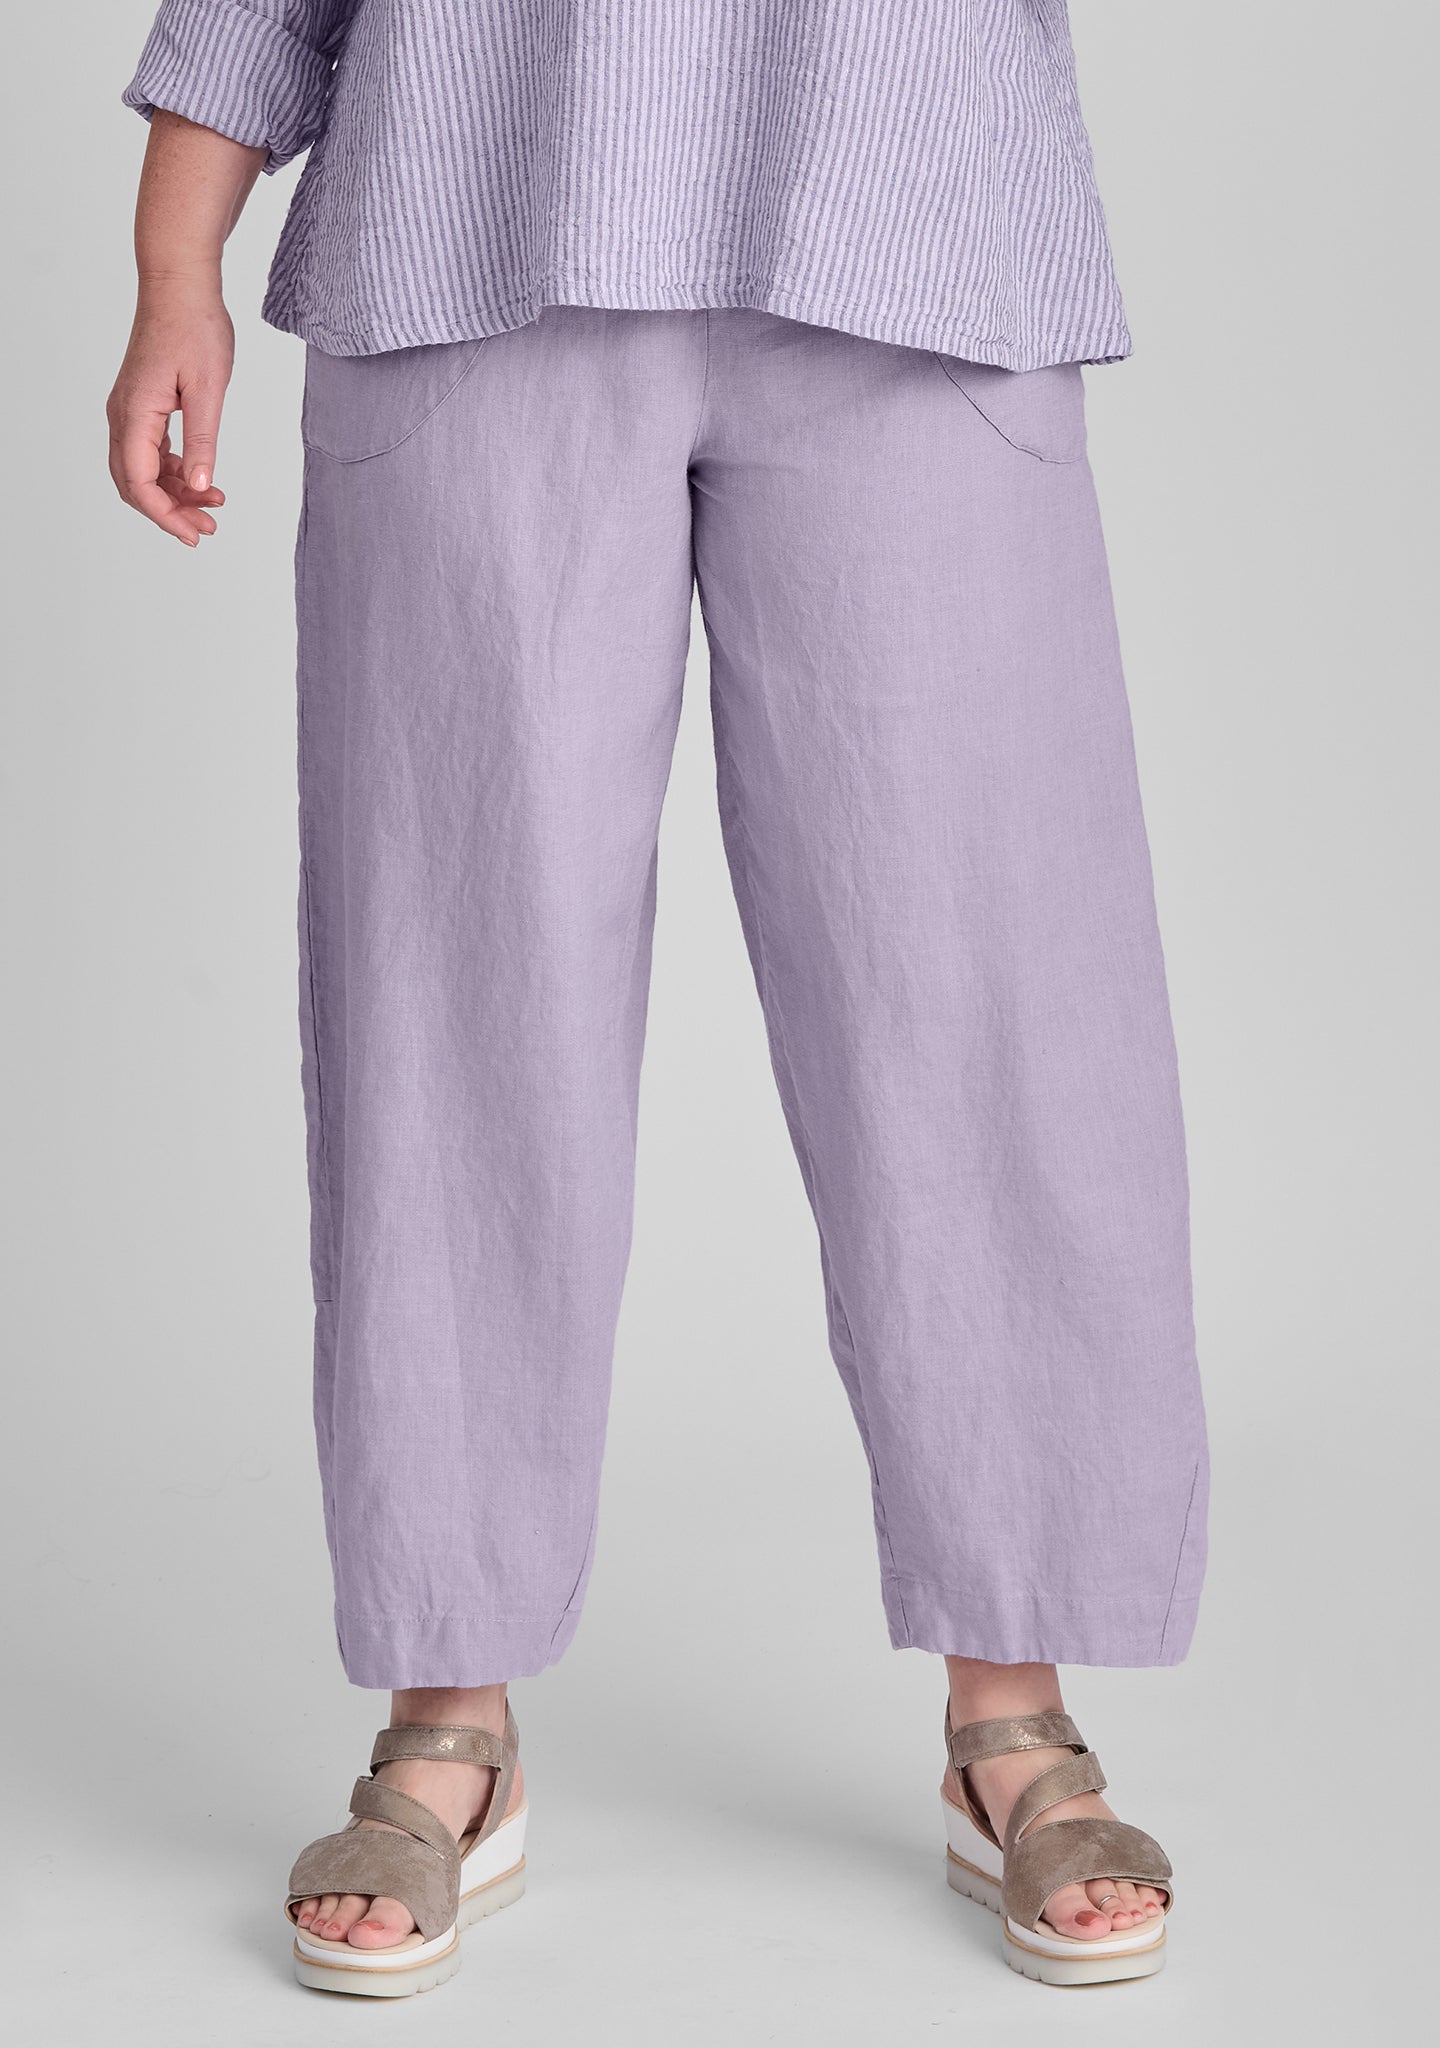 seamly pant linen pants purple